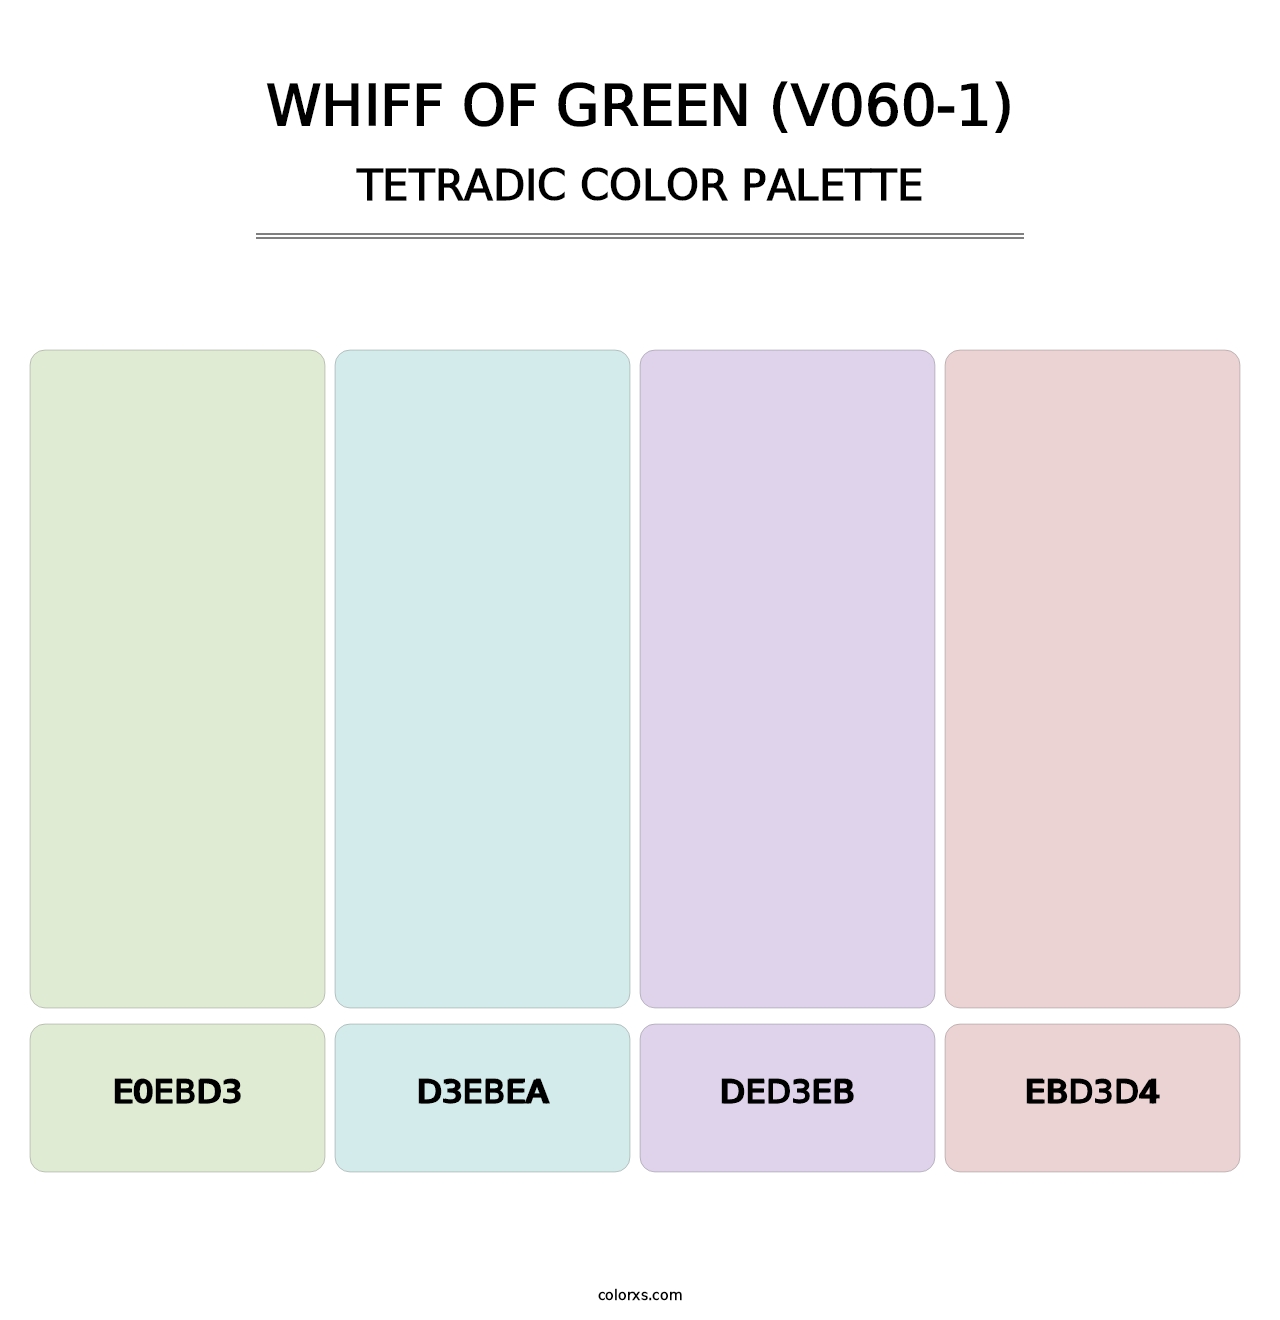 Whiff of Green (V060-1) - Tetradic Color Palette